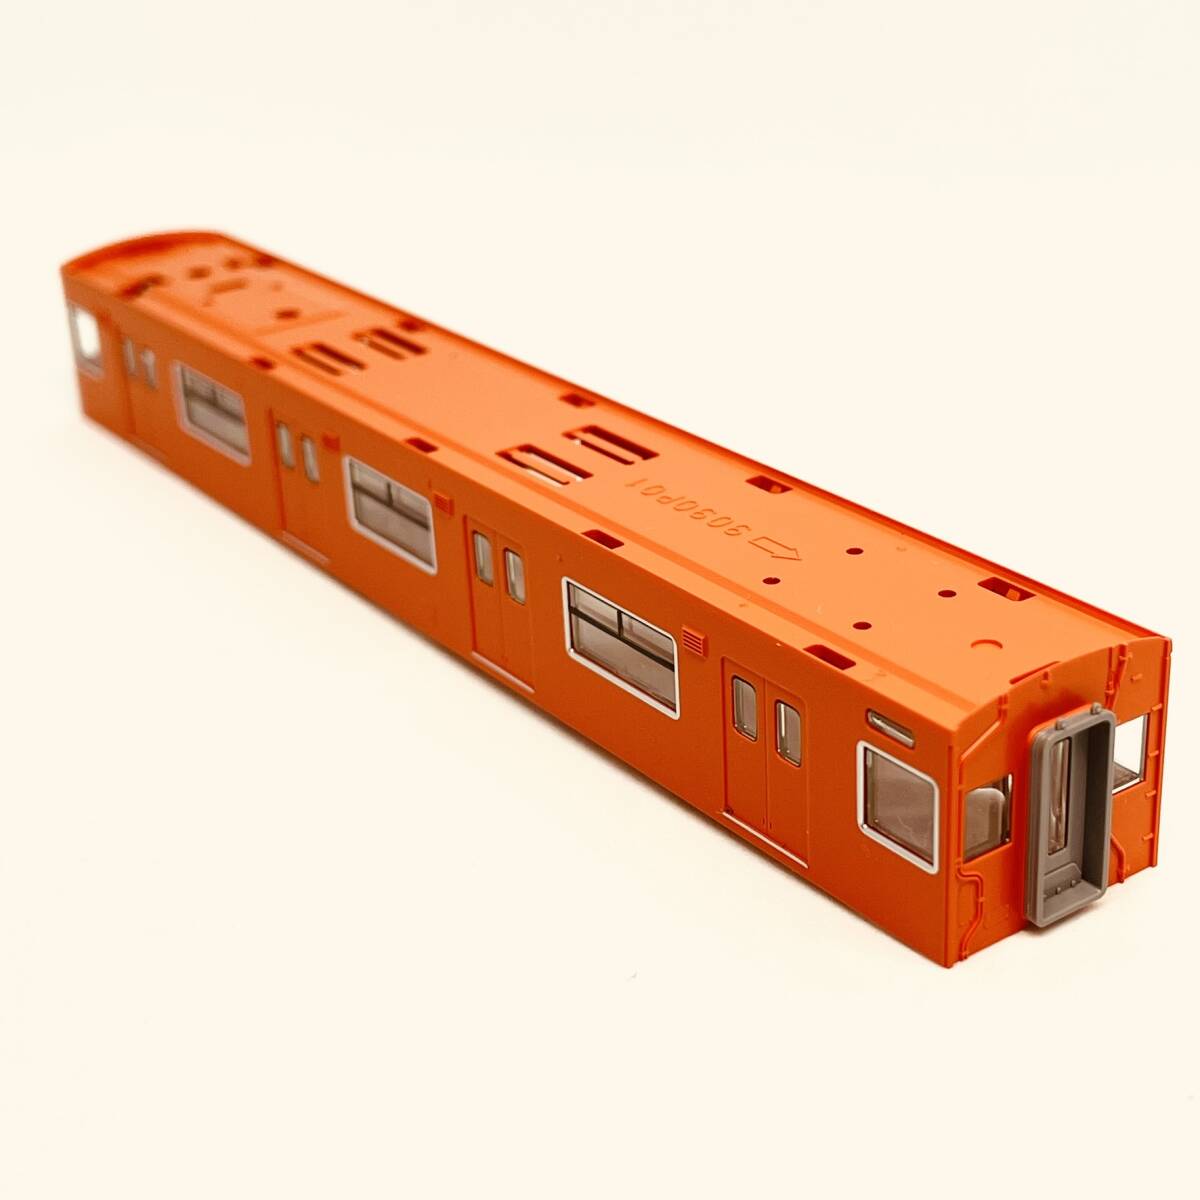 TOMIX モハ201 30N更新車/オレンジ色 ボディ+ガラス 1両分入り 98843 JR 201系通勤電車(JR西日本30N更新車・オレンジ)セットからのバラシ_入札個数1でのお渡し内容です。